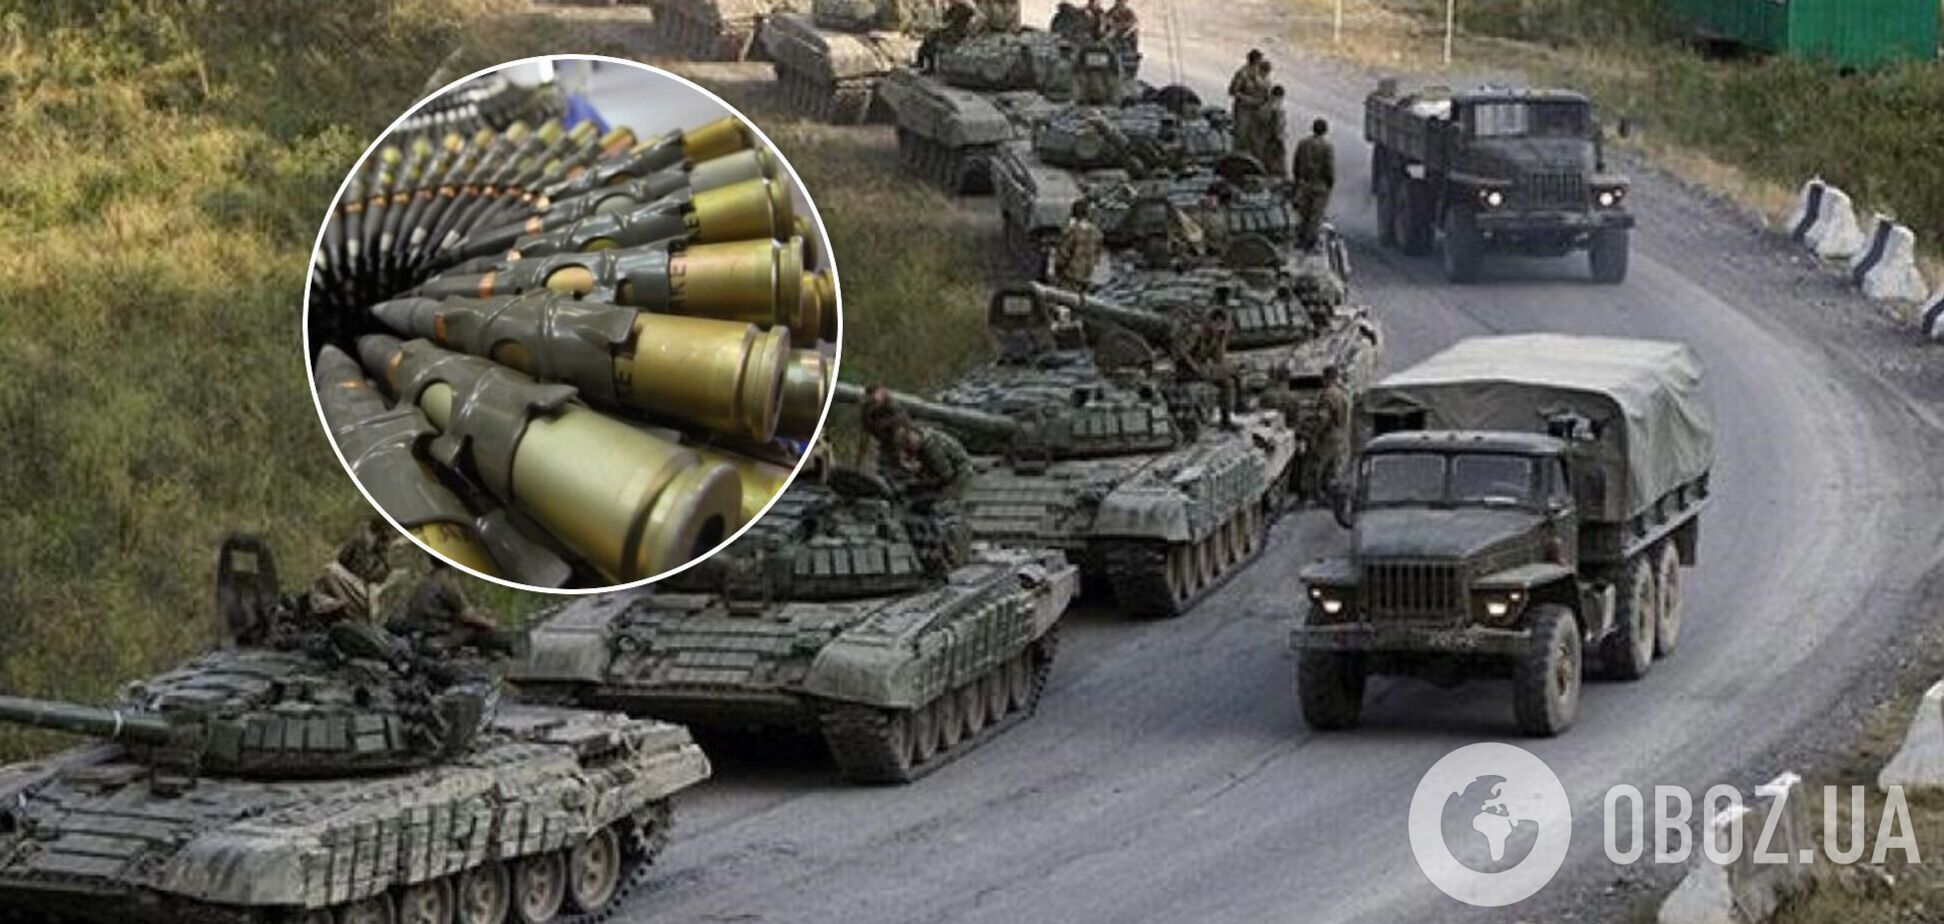 Як Росія возила снаряди на Донбас. Розслідування